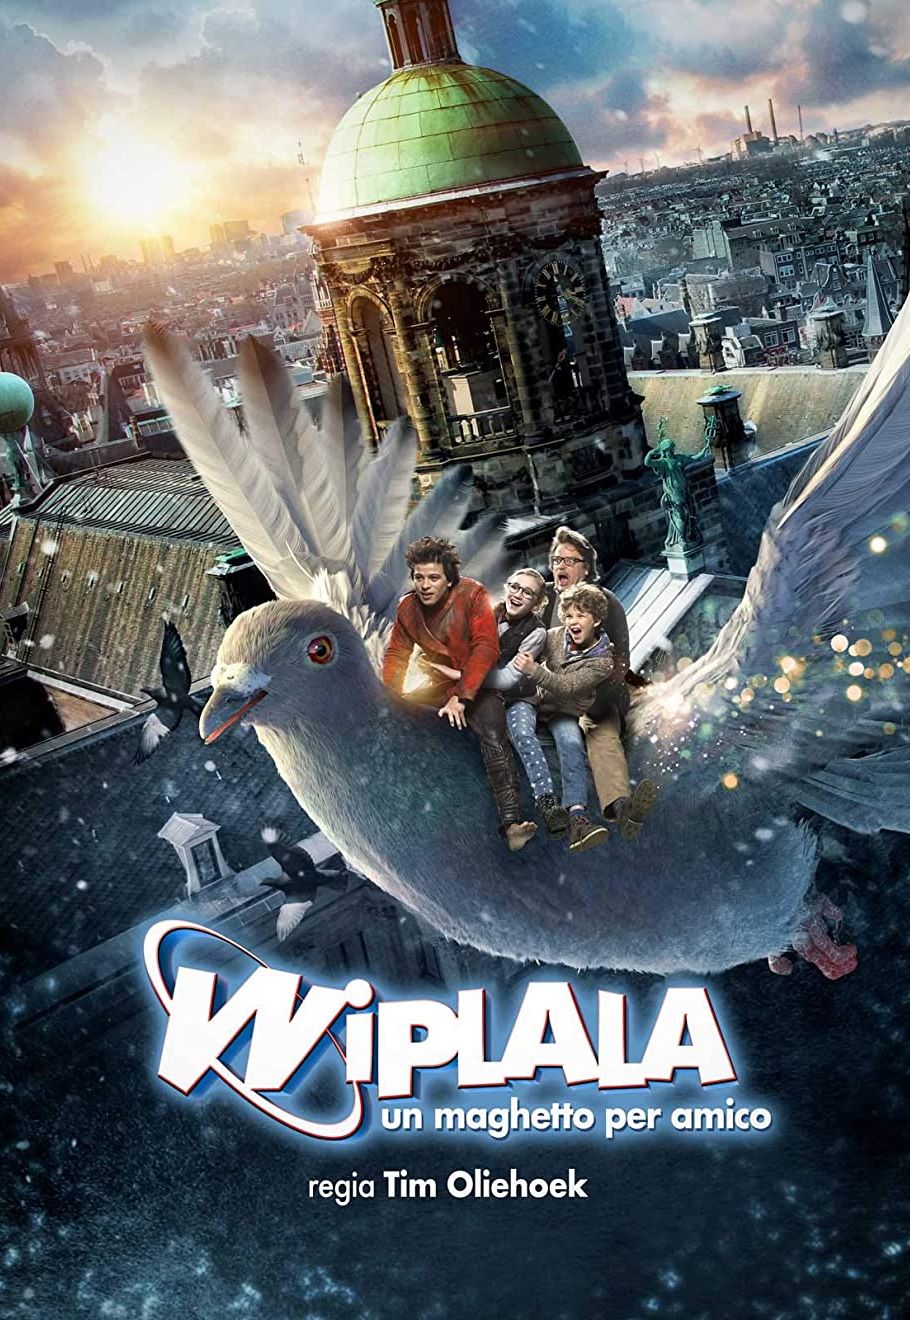 Wiplala – Un maghetto per amico [HD] (2014)